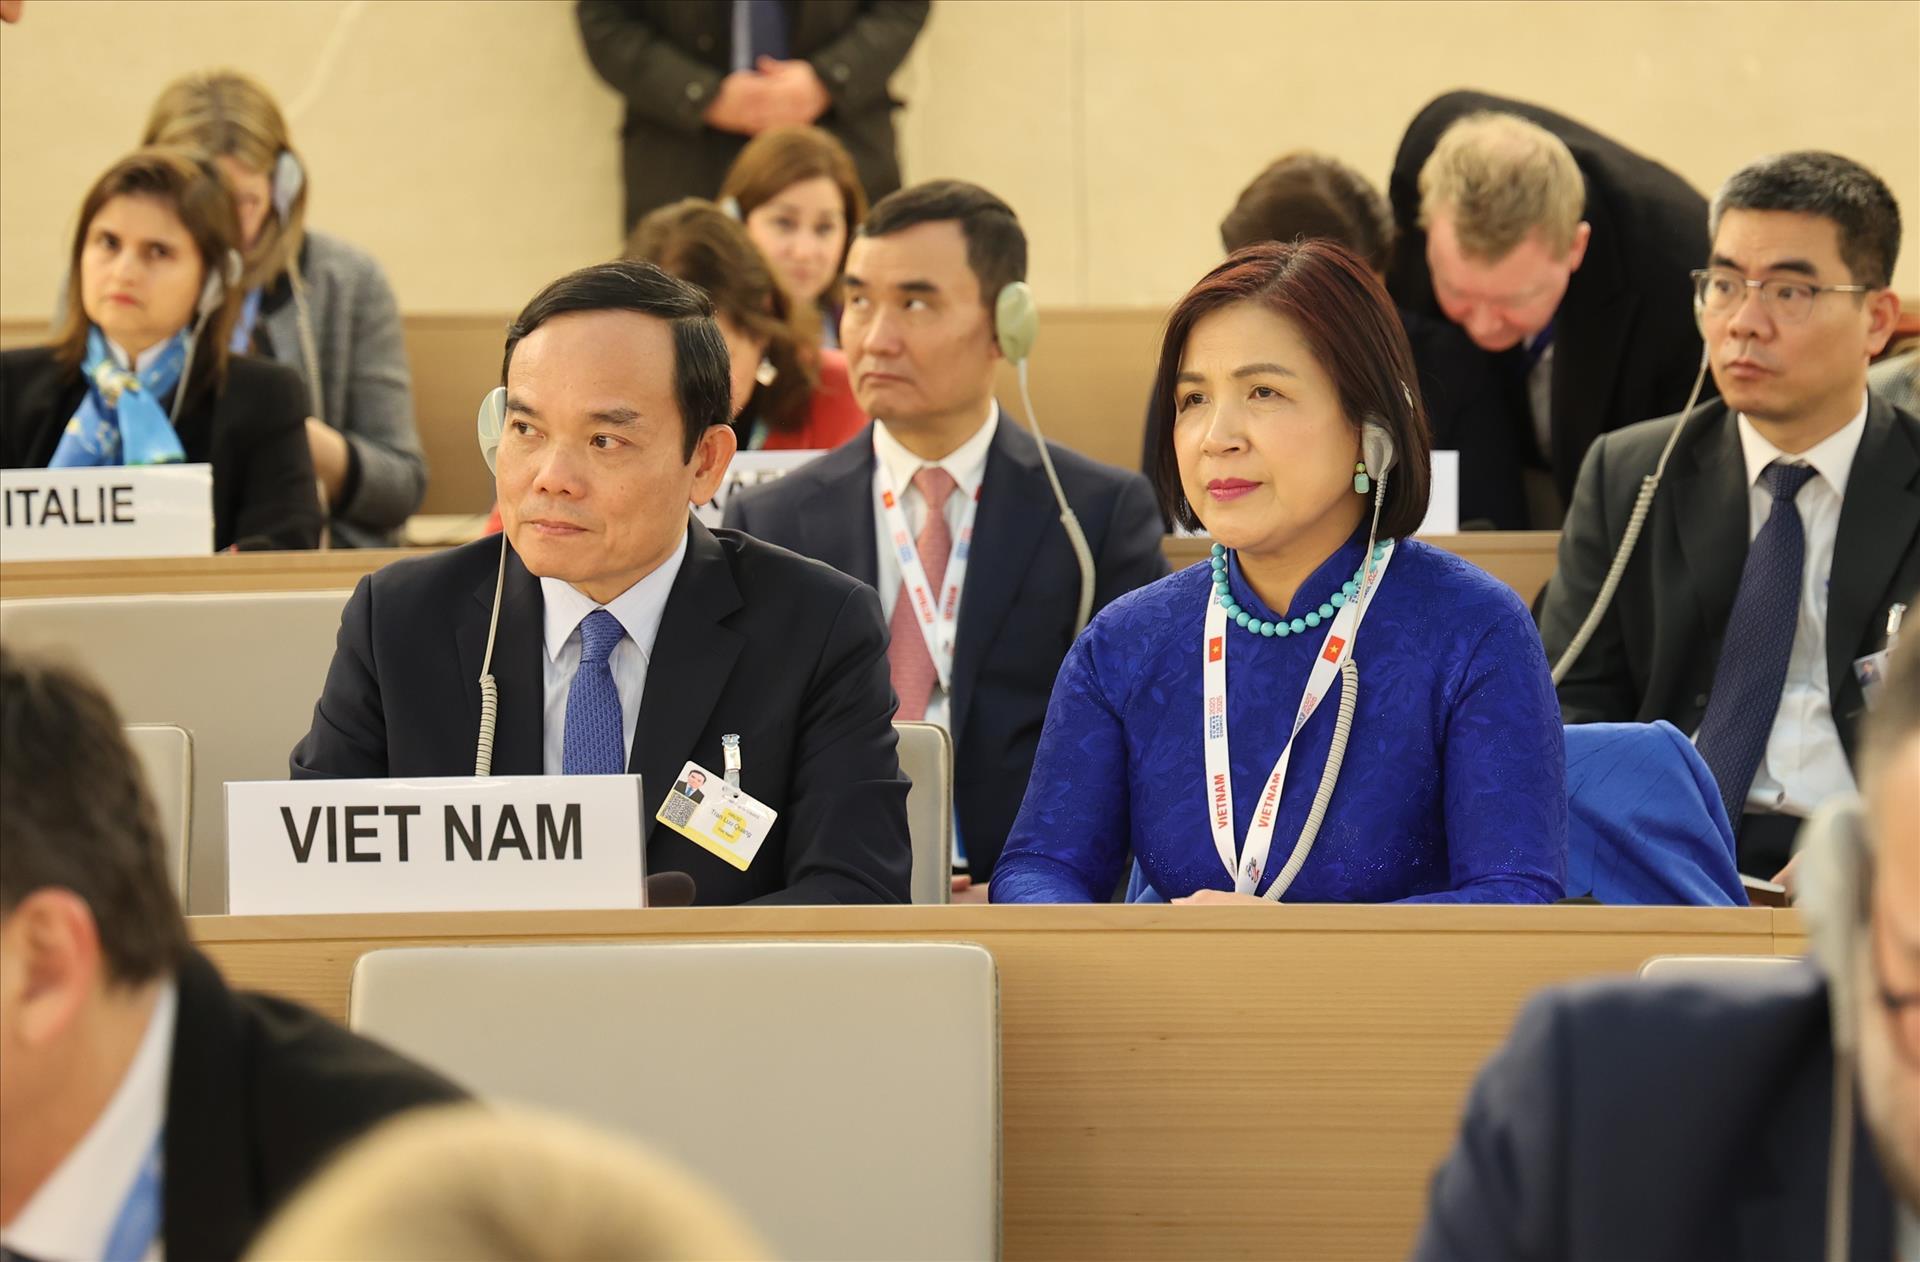 Phó Thủ tướng Chính phủ Trần Lưu Quang tham dự Khóa họp lần thứ 52 của Hội đồng Nhân quyền LHQ. Ảnh: TTXVN